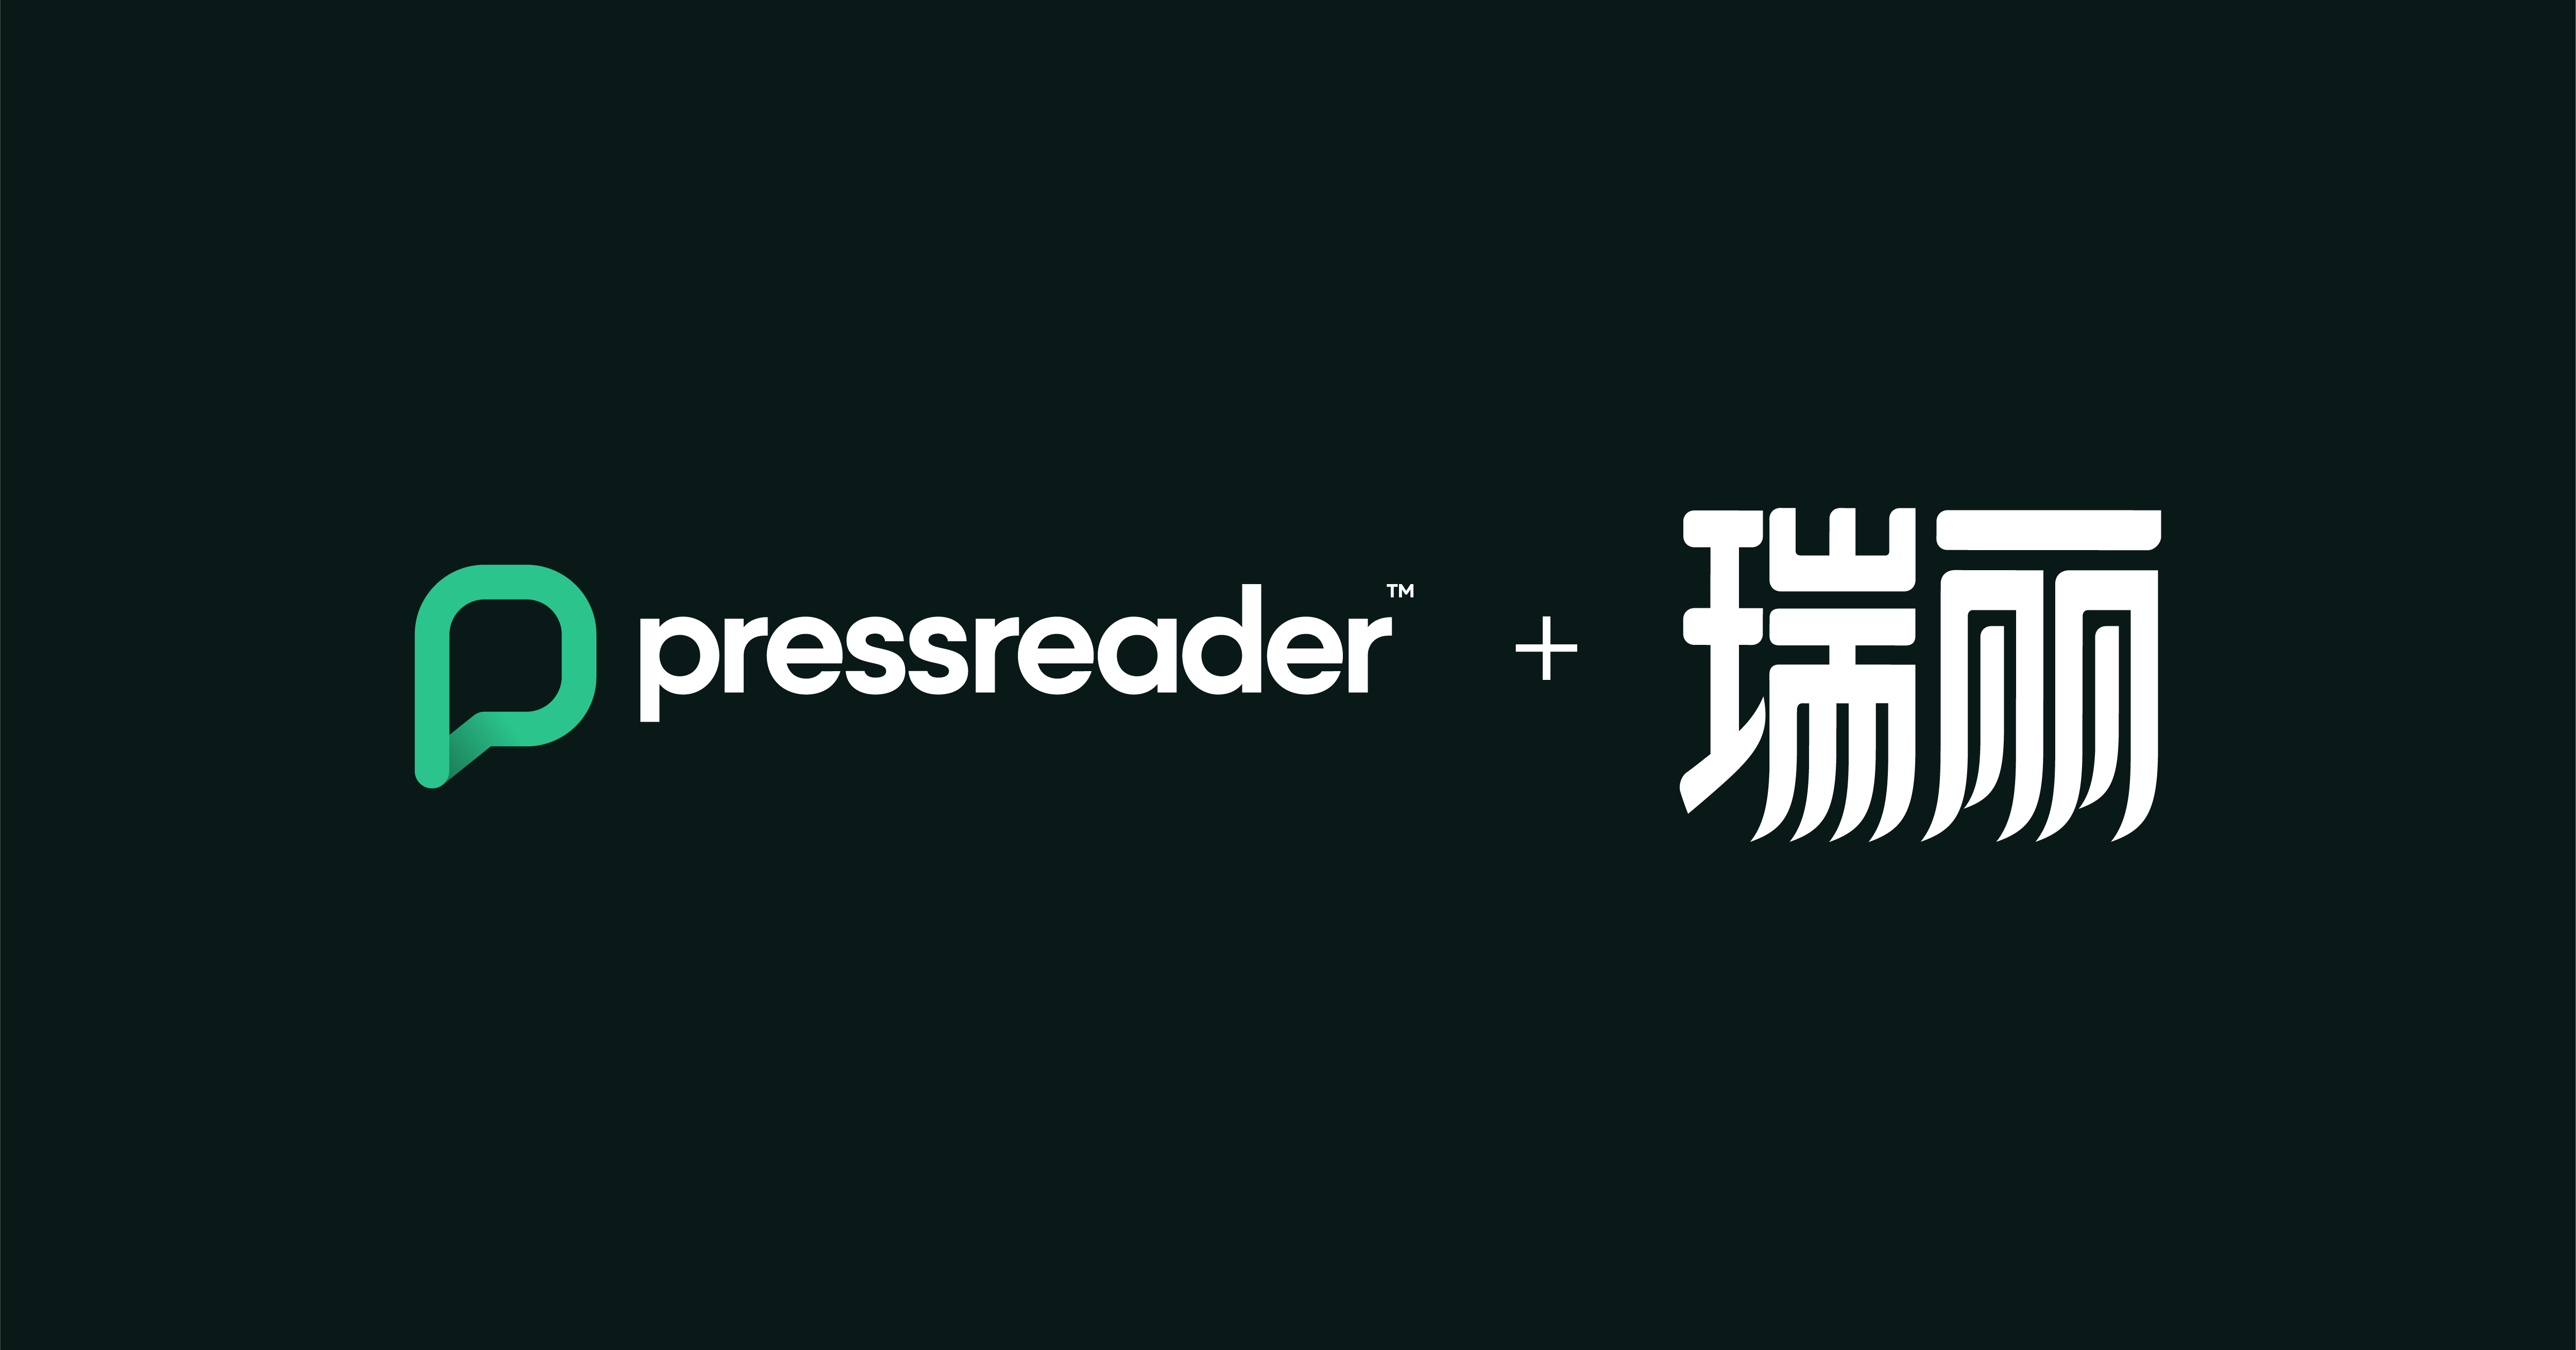 PressReader logo + Rayli logo